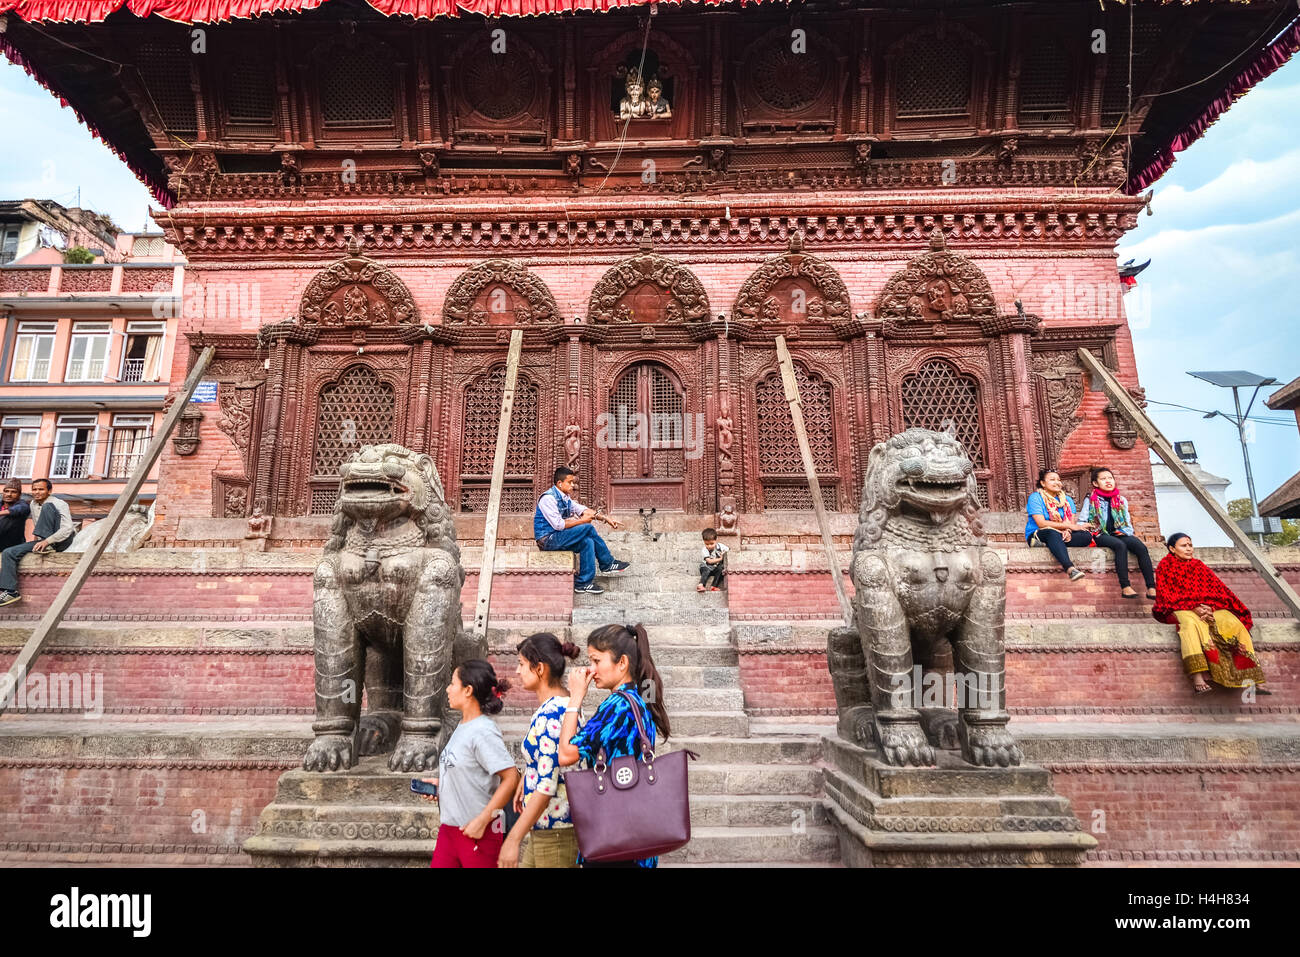 Menschen, die Freizeit auf der Treppe zum Shiva Parvati Tempel in Kathmandu Durbar Square. Stockfoto